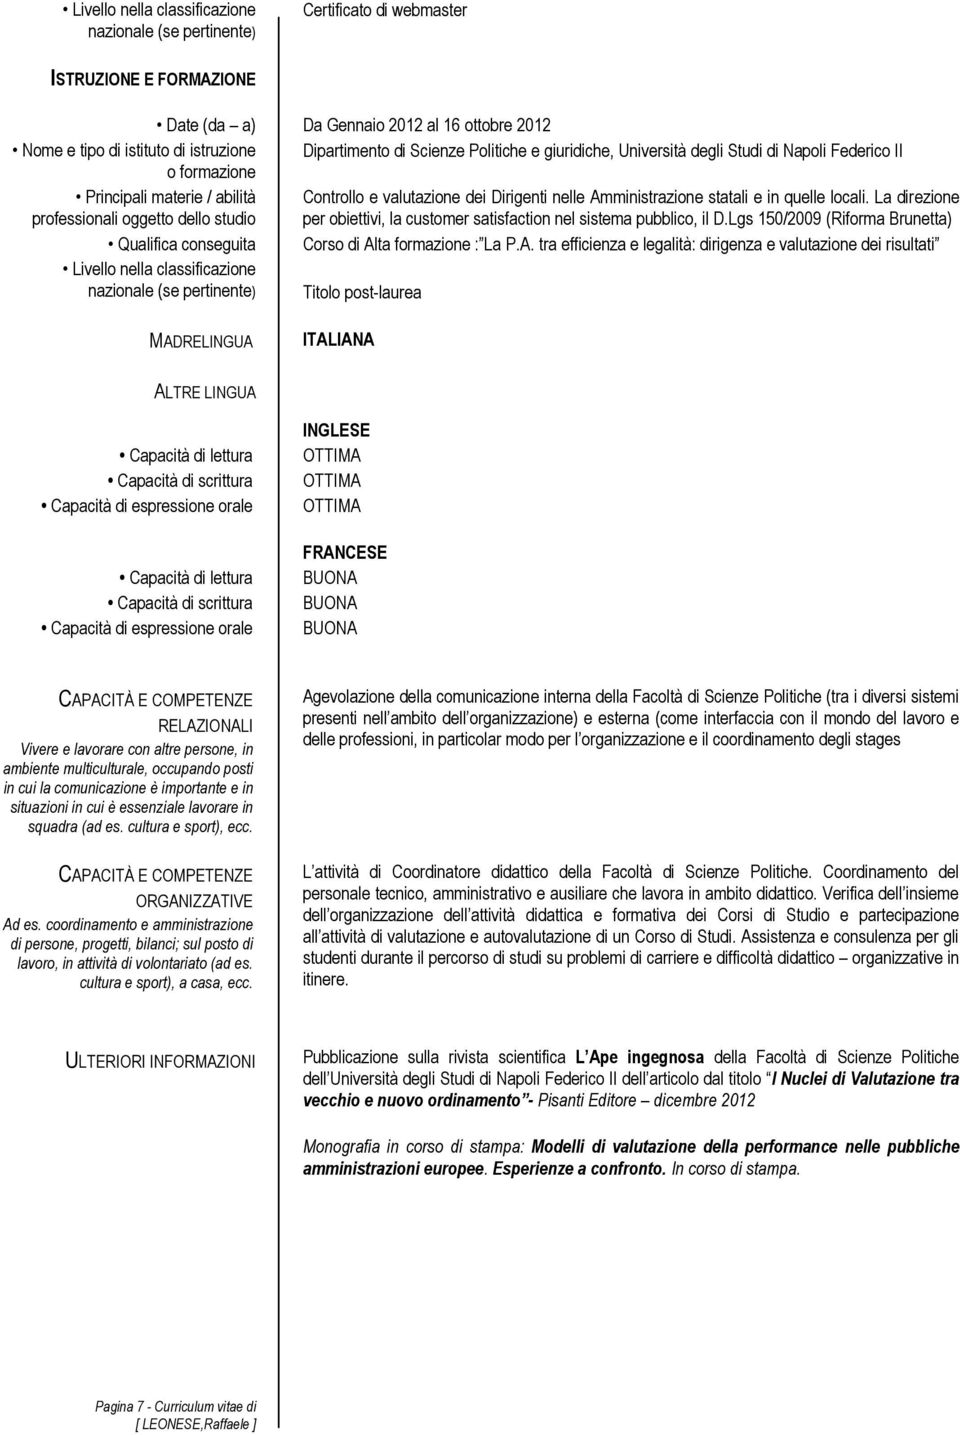 Lgs 150/2009 (Riforma Brunetta) Qualifica conseguita Corso di Al